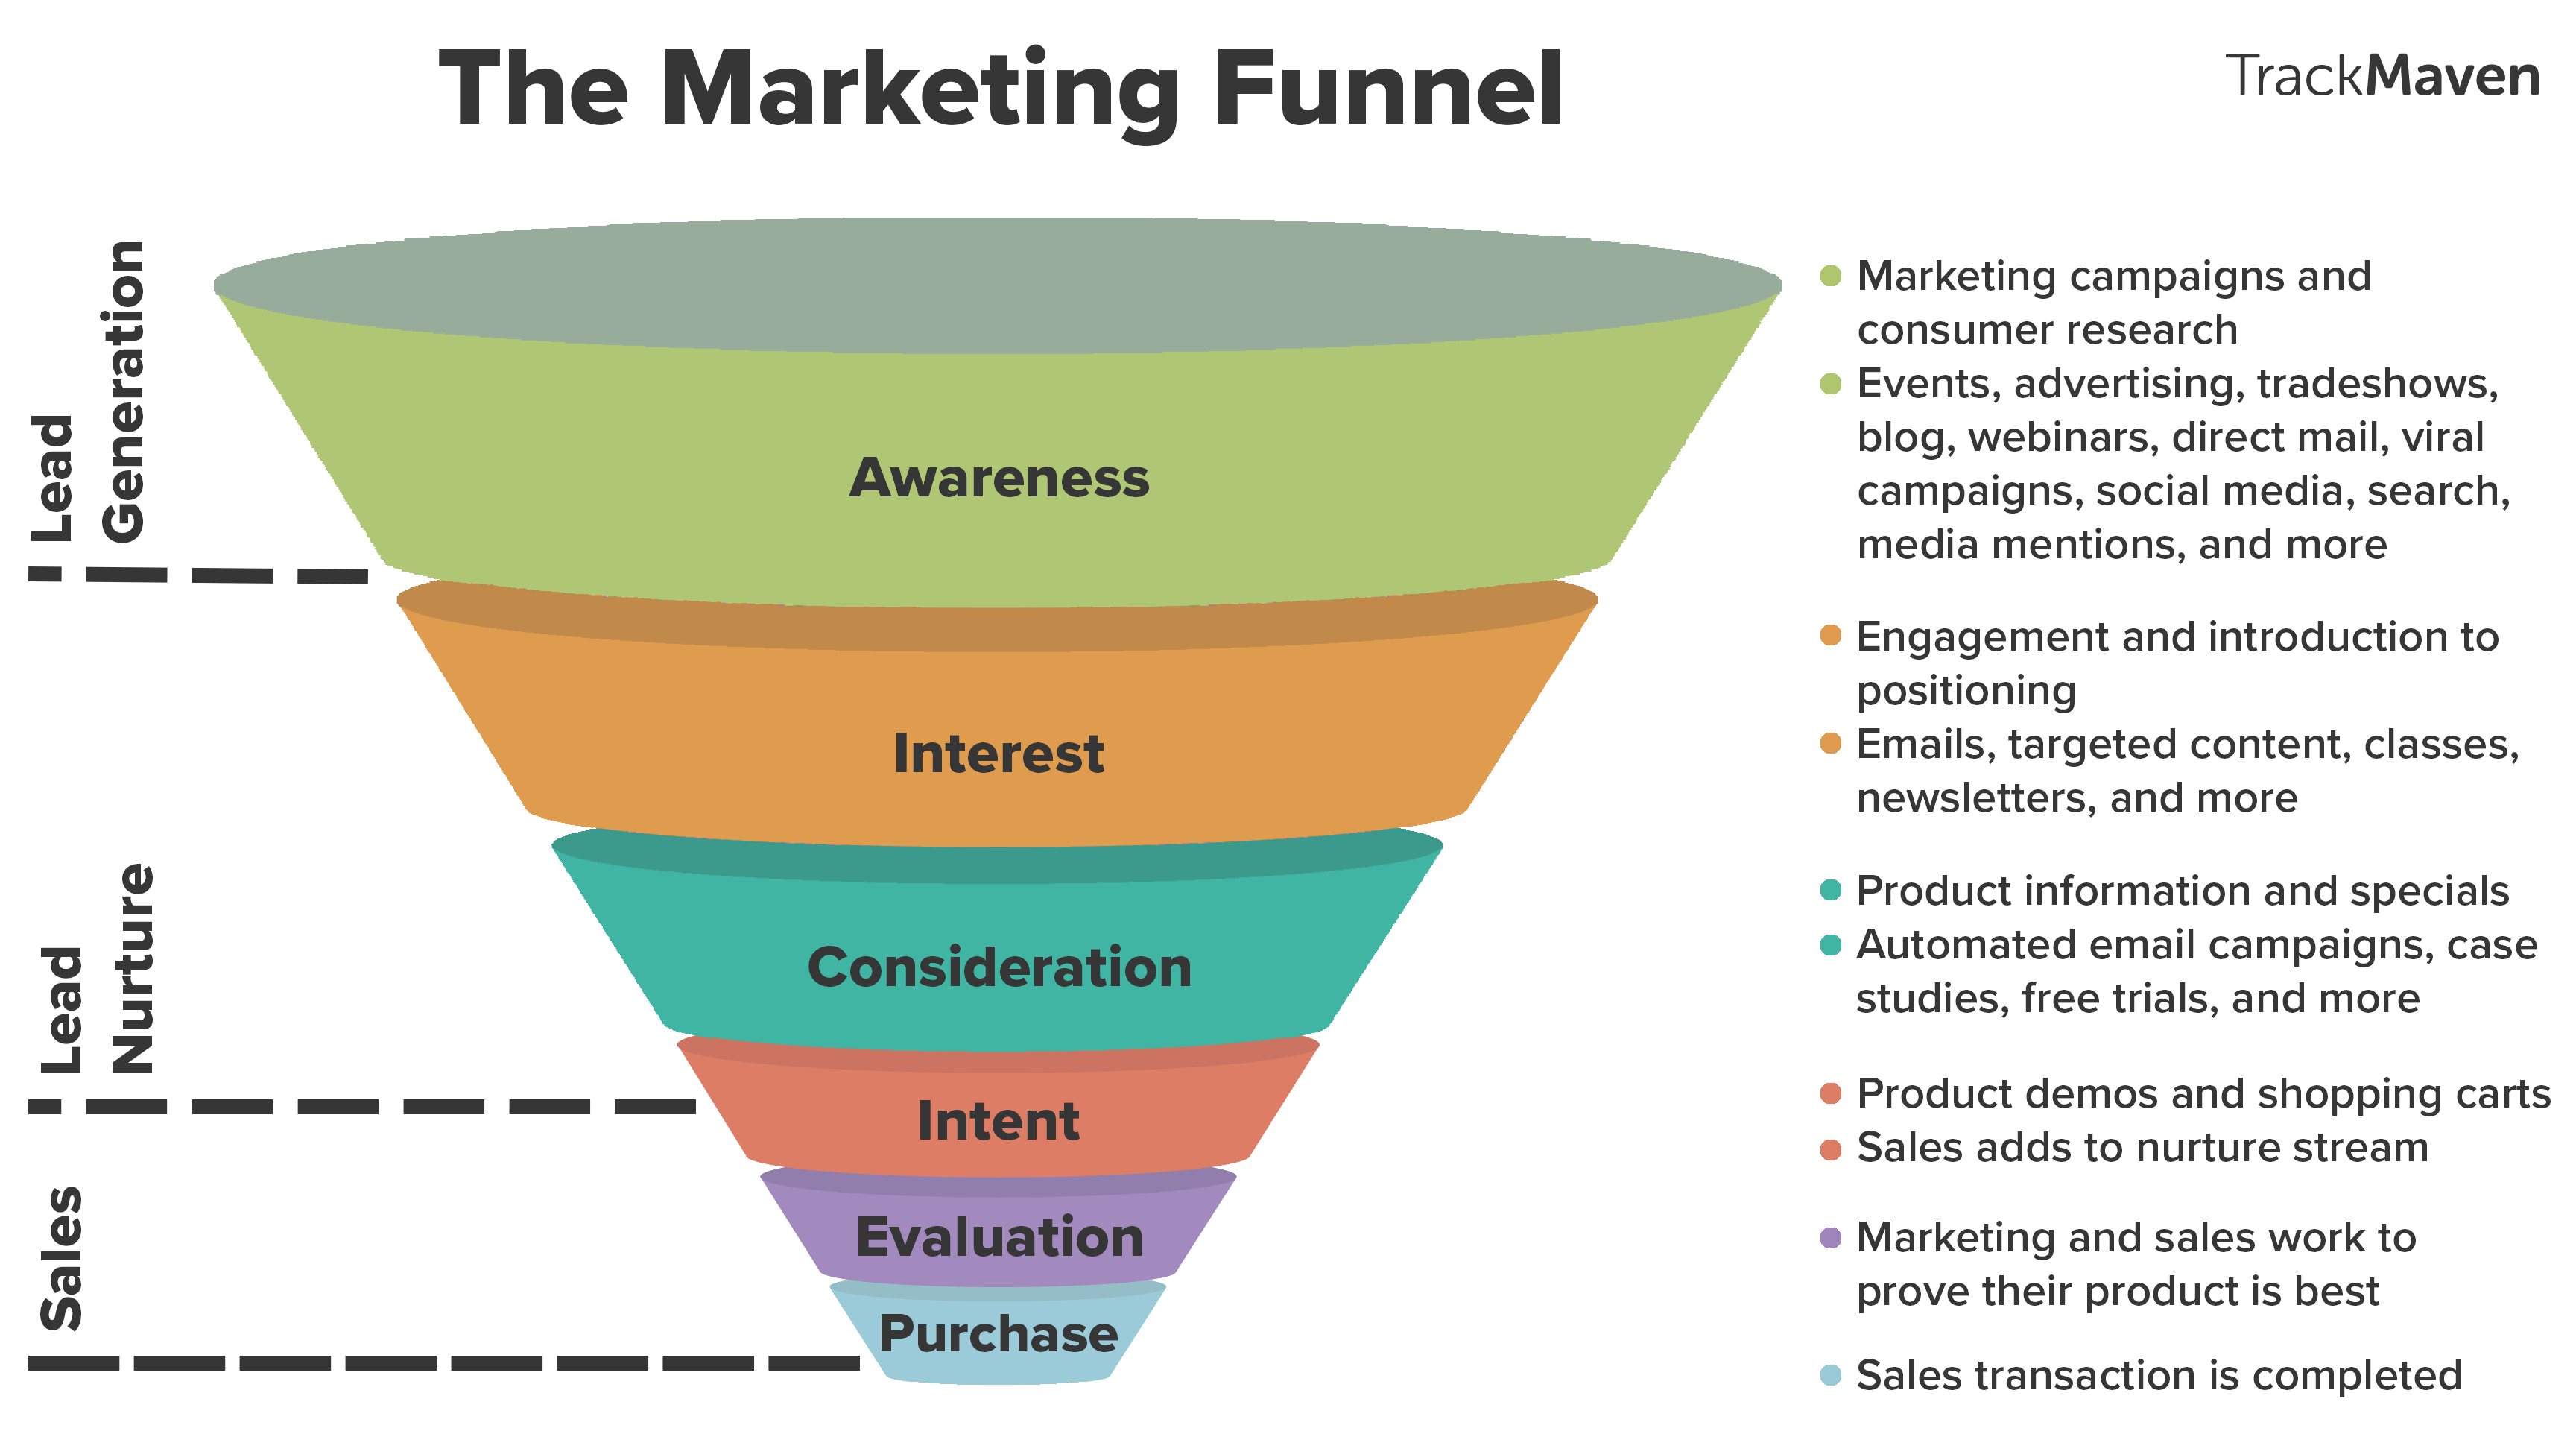 Marketing funnel là gì